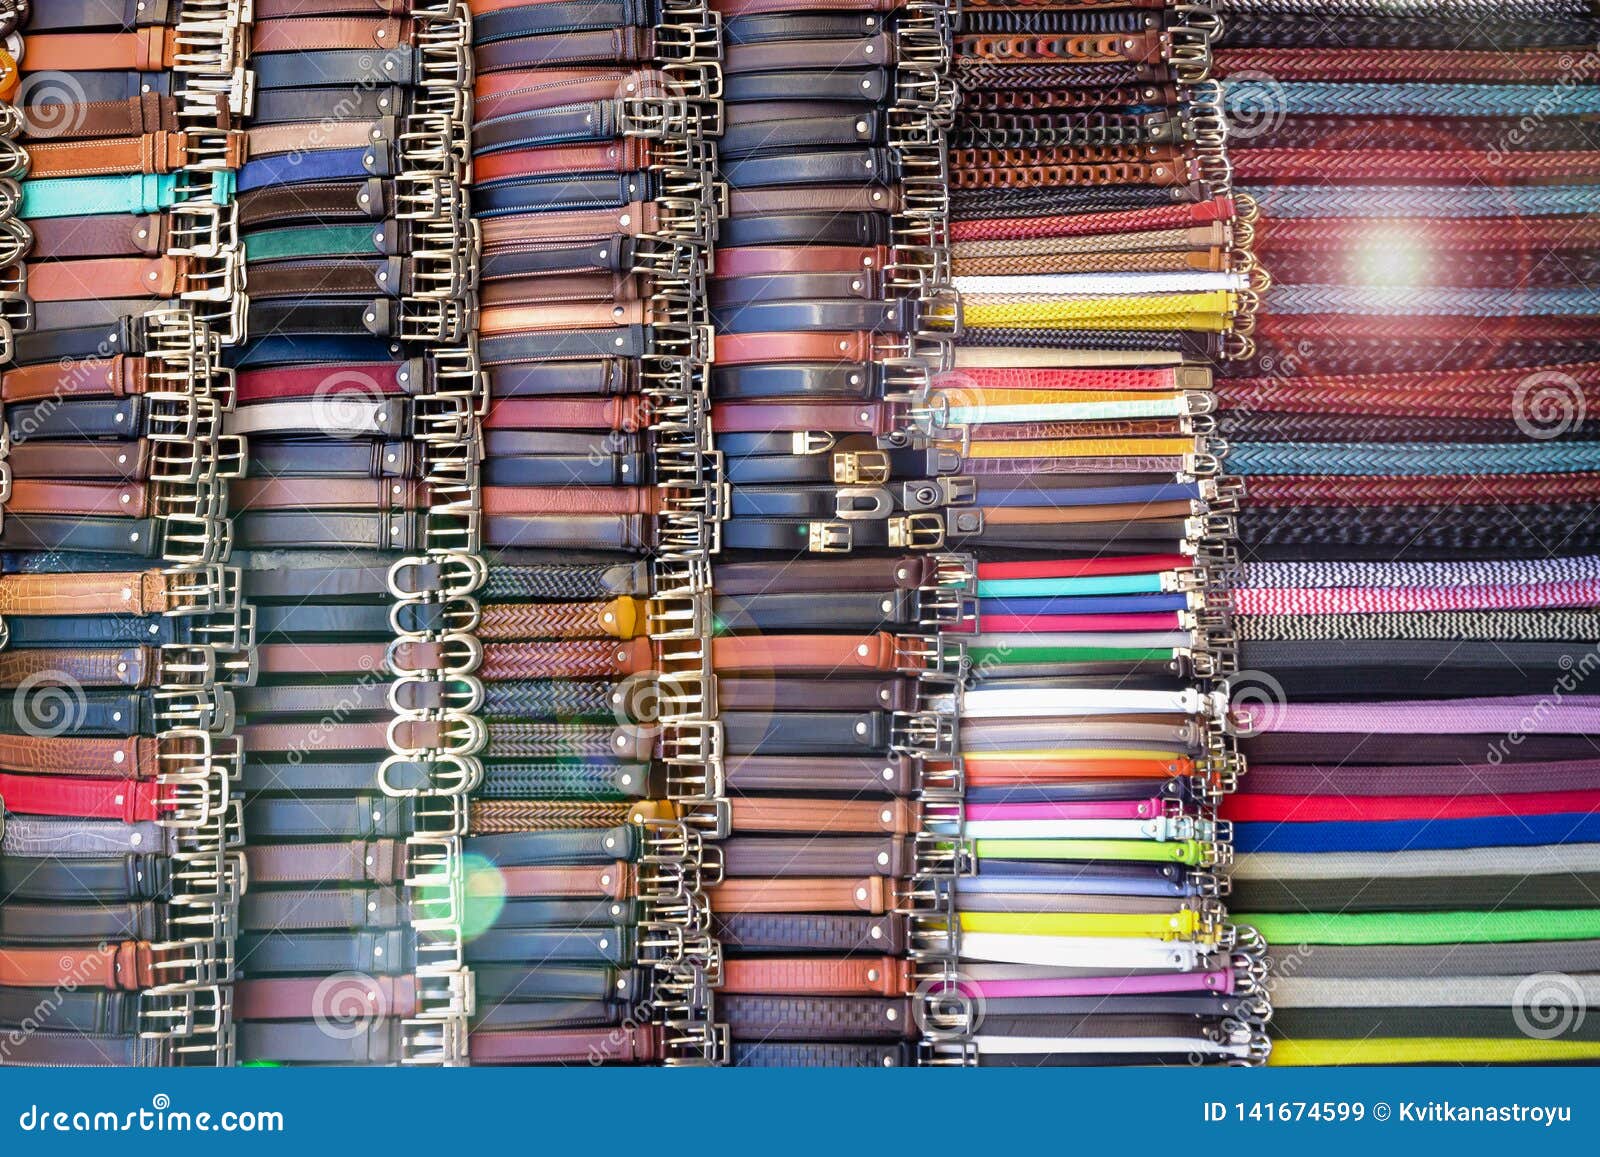 lots-colorful-leather-belts-street-market-belt-pattern-sun-glare-effect-lots-colorful-leather-belts-italian-141674599.jpg